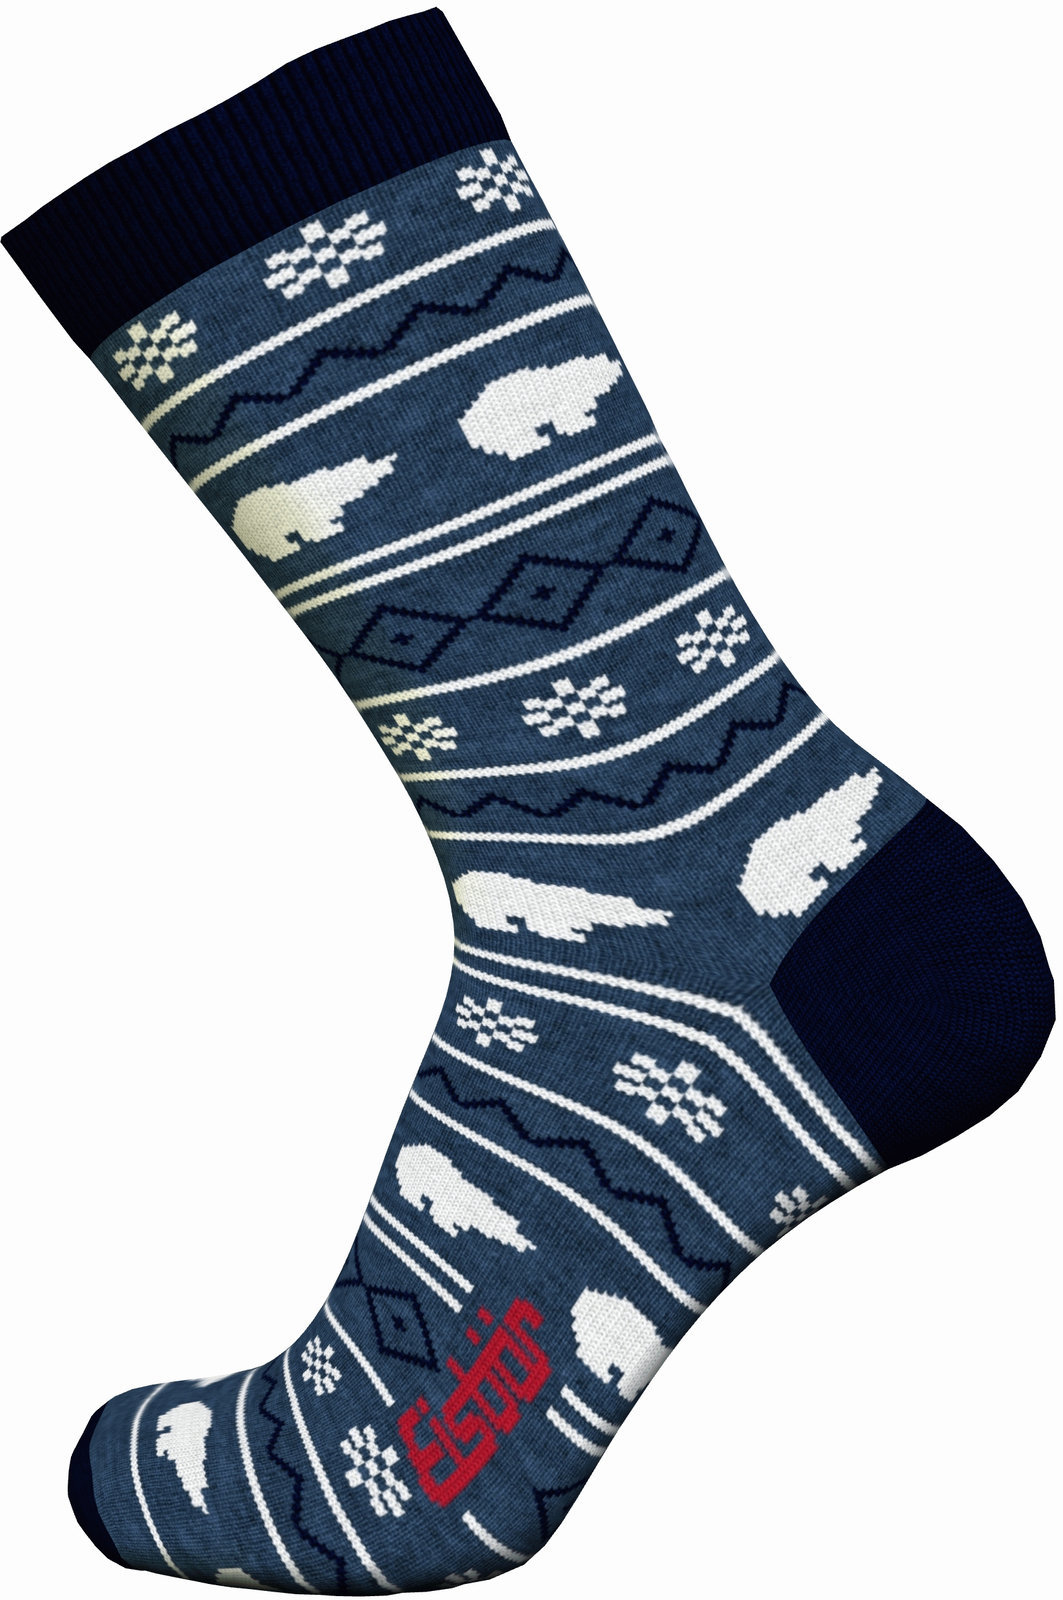 Ski Socken Eisbär Lifestyle Jacquard Avio/Navy-Grey/White 43-45 Ski Socken